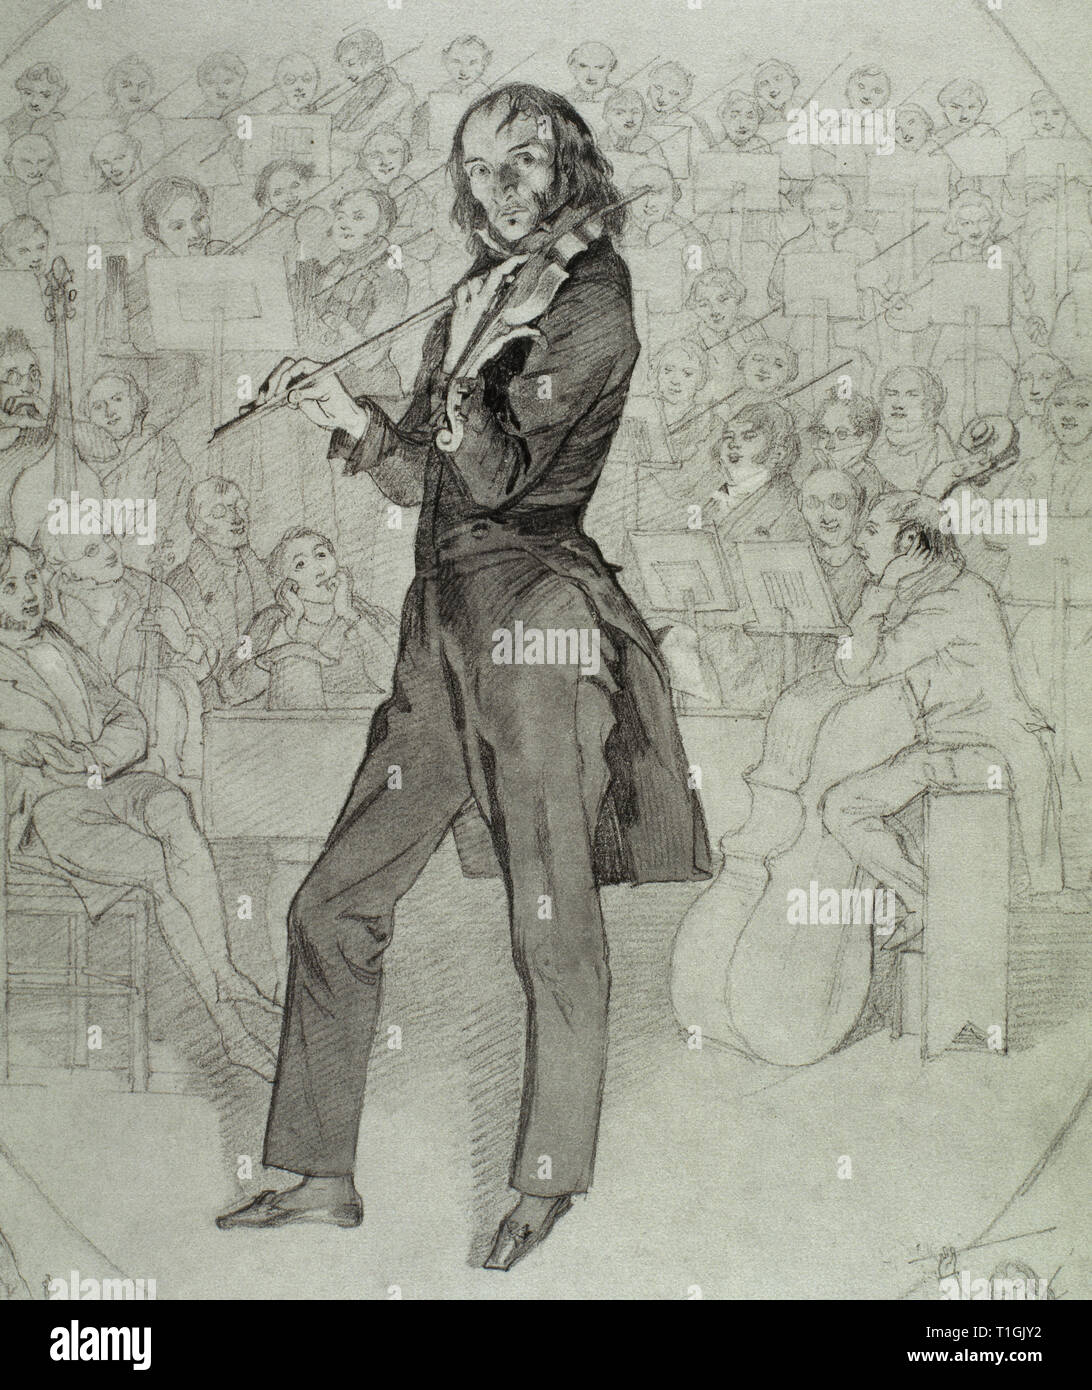 Niccolo Paganini (1782-1840). Italienische Geigerin. Zeichnung von Daniel Maclise (1806-1870), 1831. Victoria und Albert Museum. London, England, Vereinigtes Königreich. Stockfoto